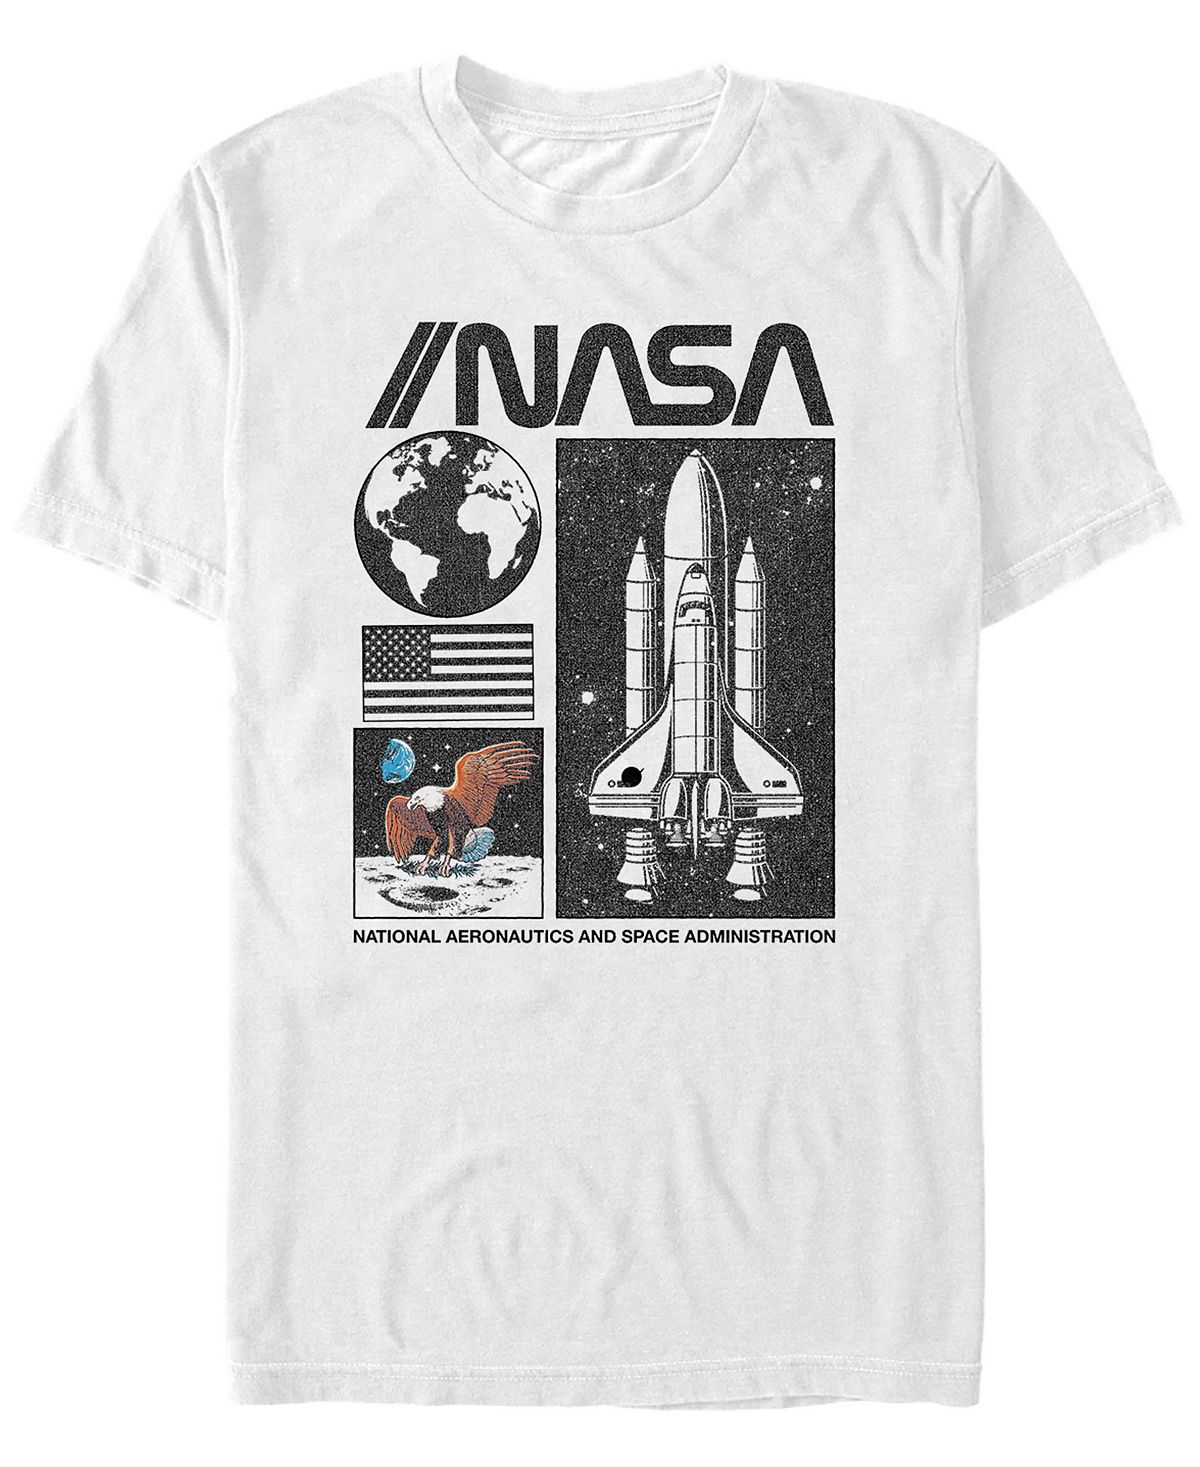 Мужская футболка с коротким рукавом национального управления по аэронавтике и исследованию космического пространства наса Fifth Sun, белый